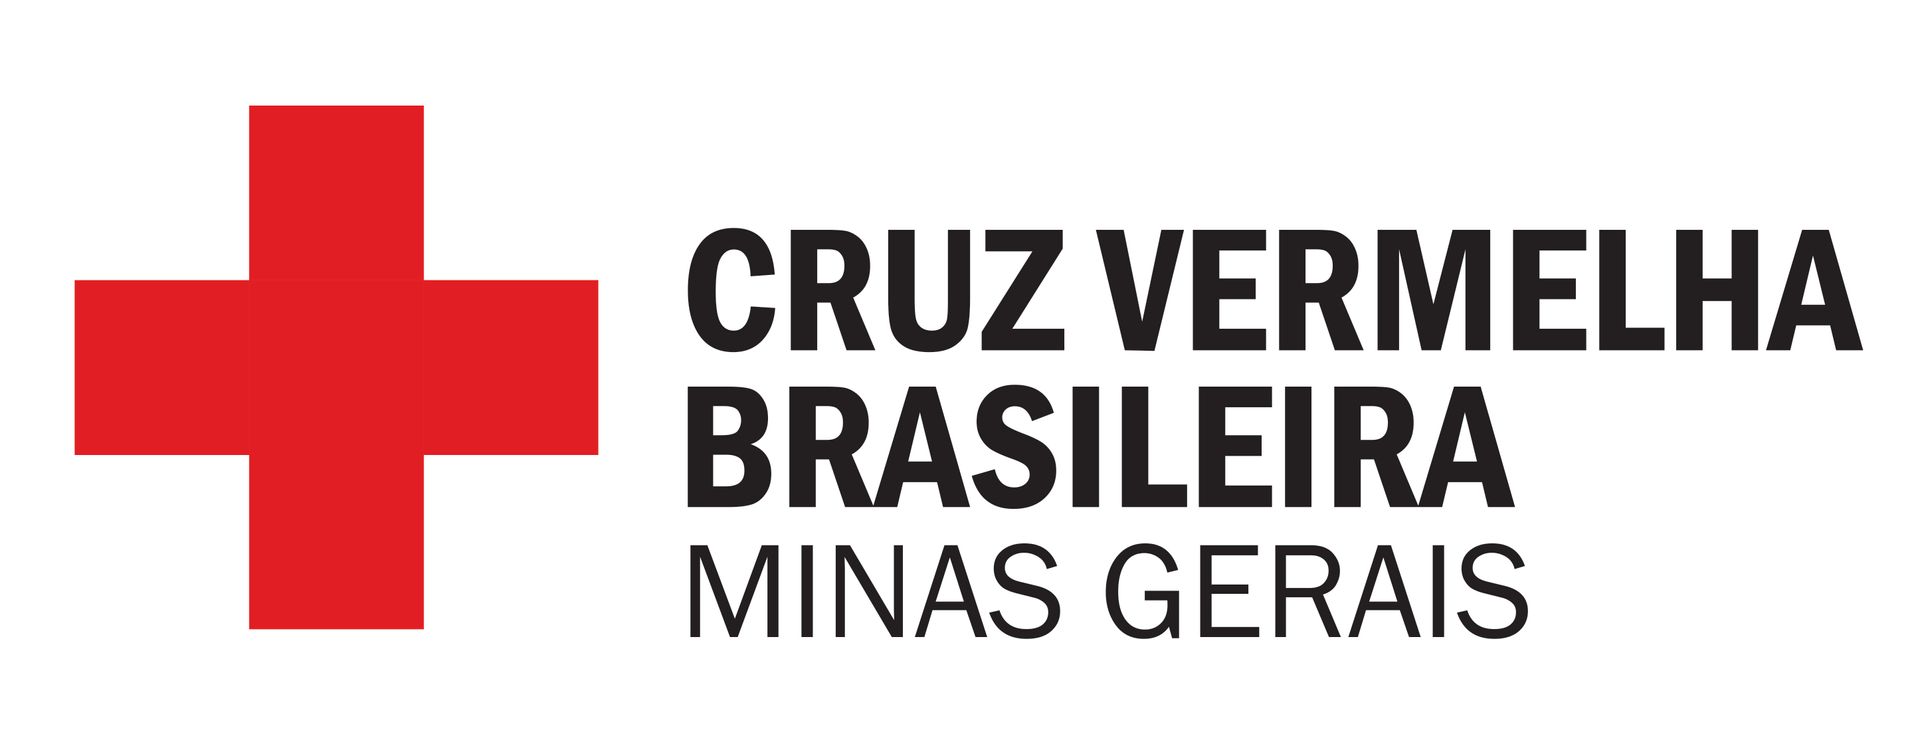 The logo for cruz vermelha brasileira minas gerais